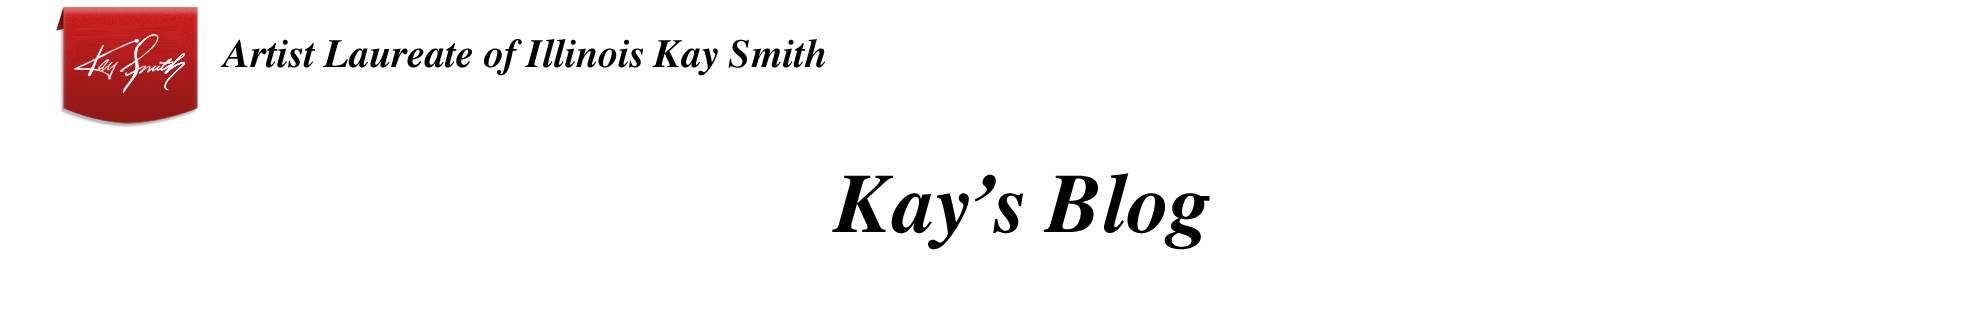 Kay Smith Artist Laureate of Illinois Kays Blog